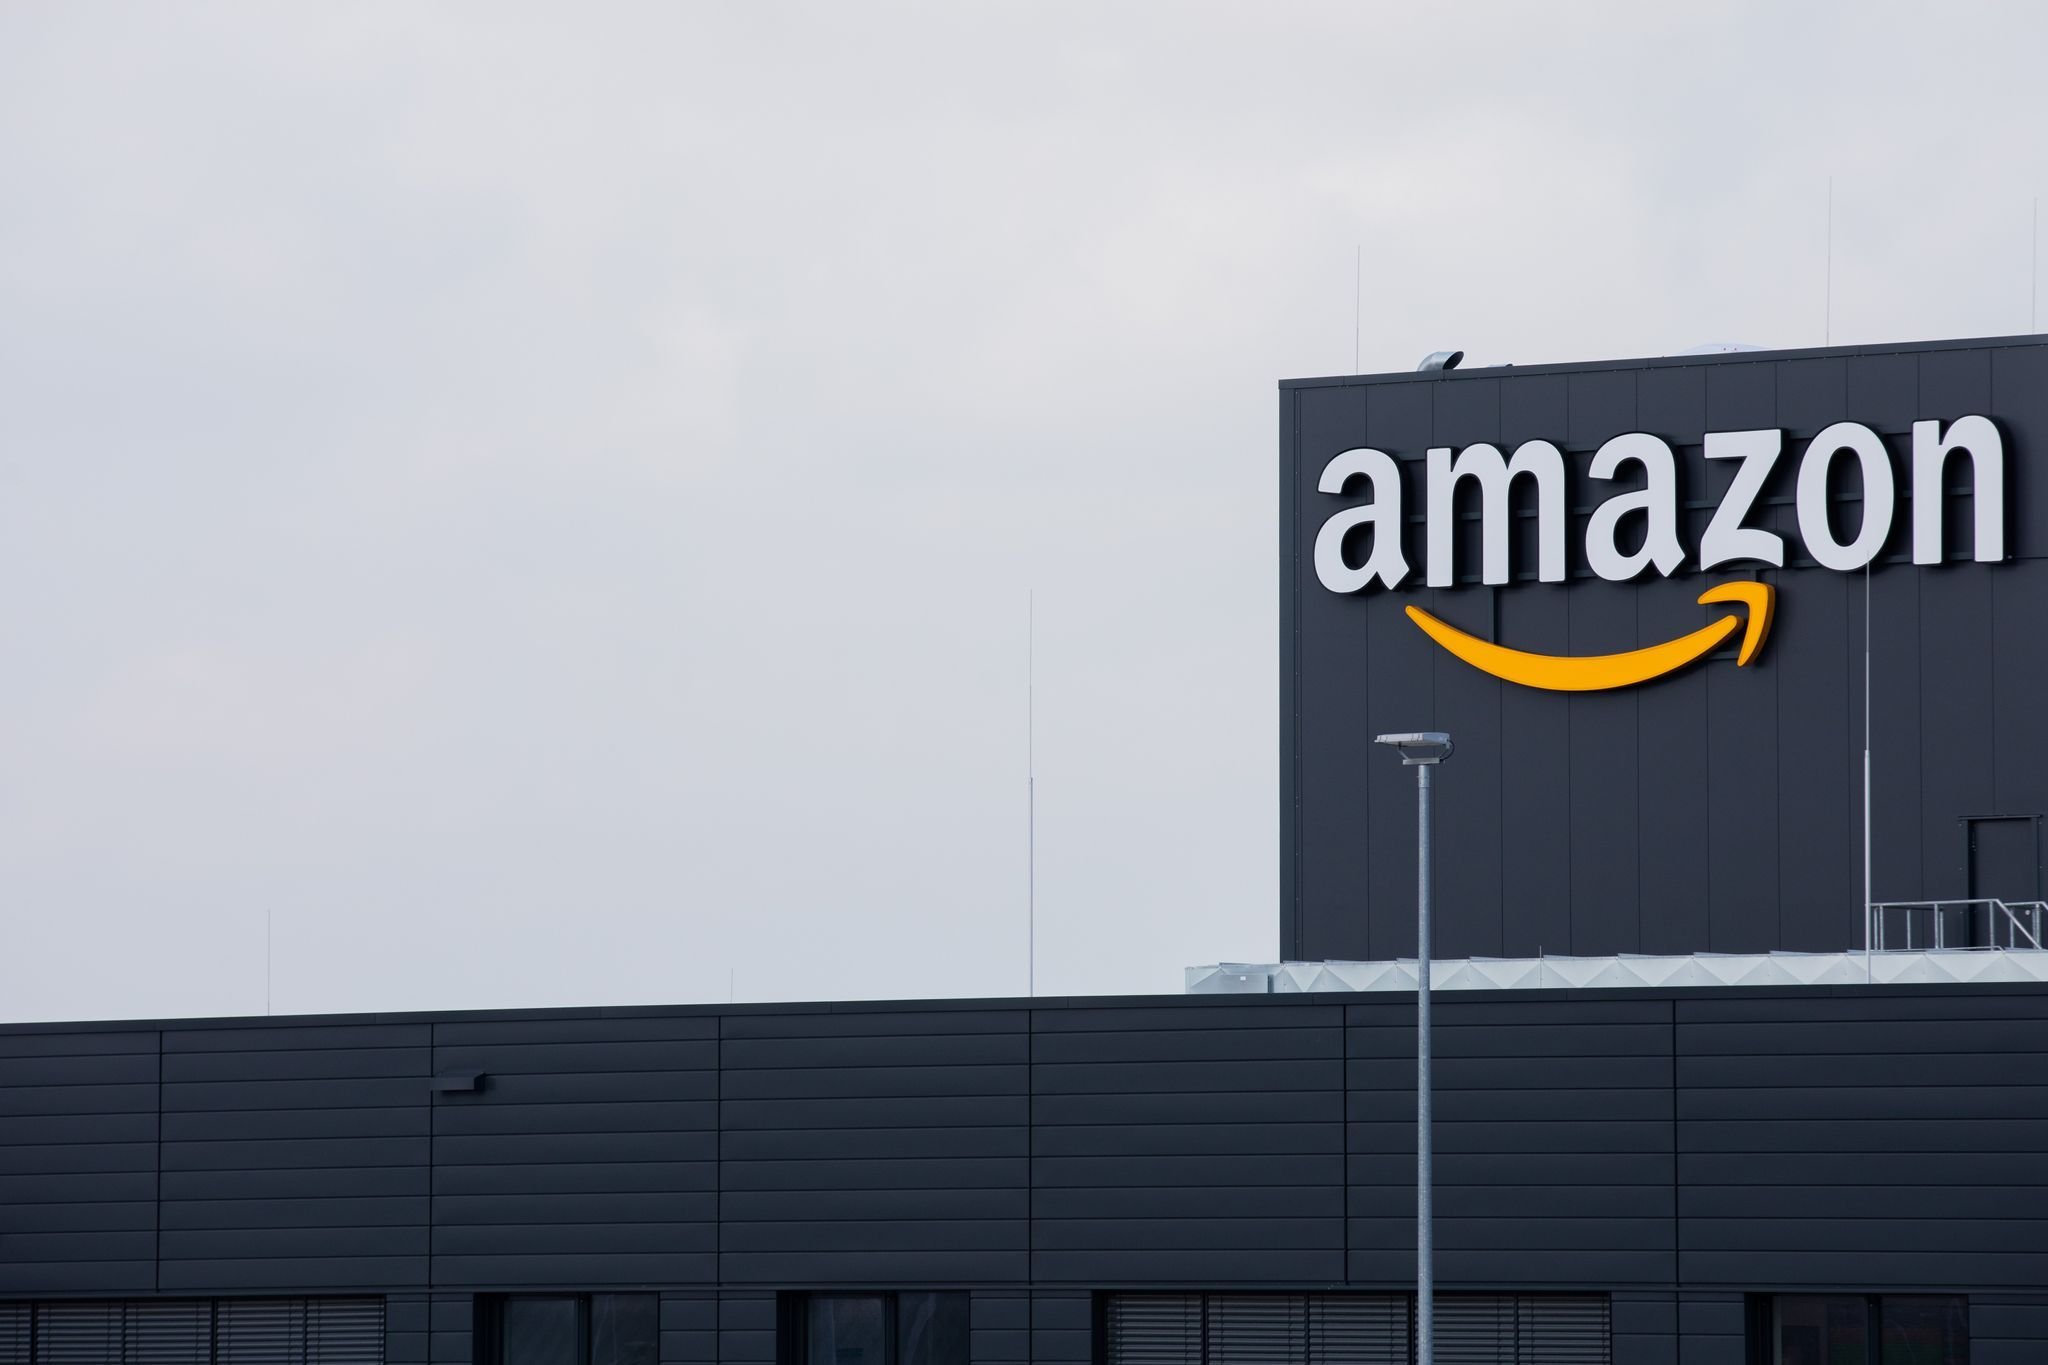 Quartalszahlen: Amazon wächst stärker als erwartet - Aktie schießt nach oben